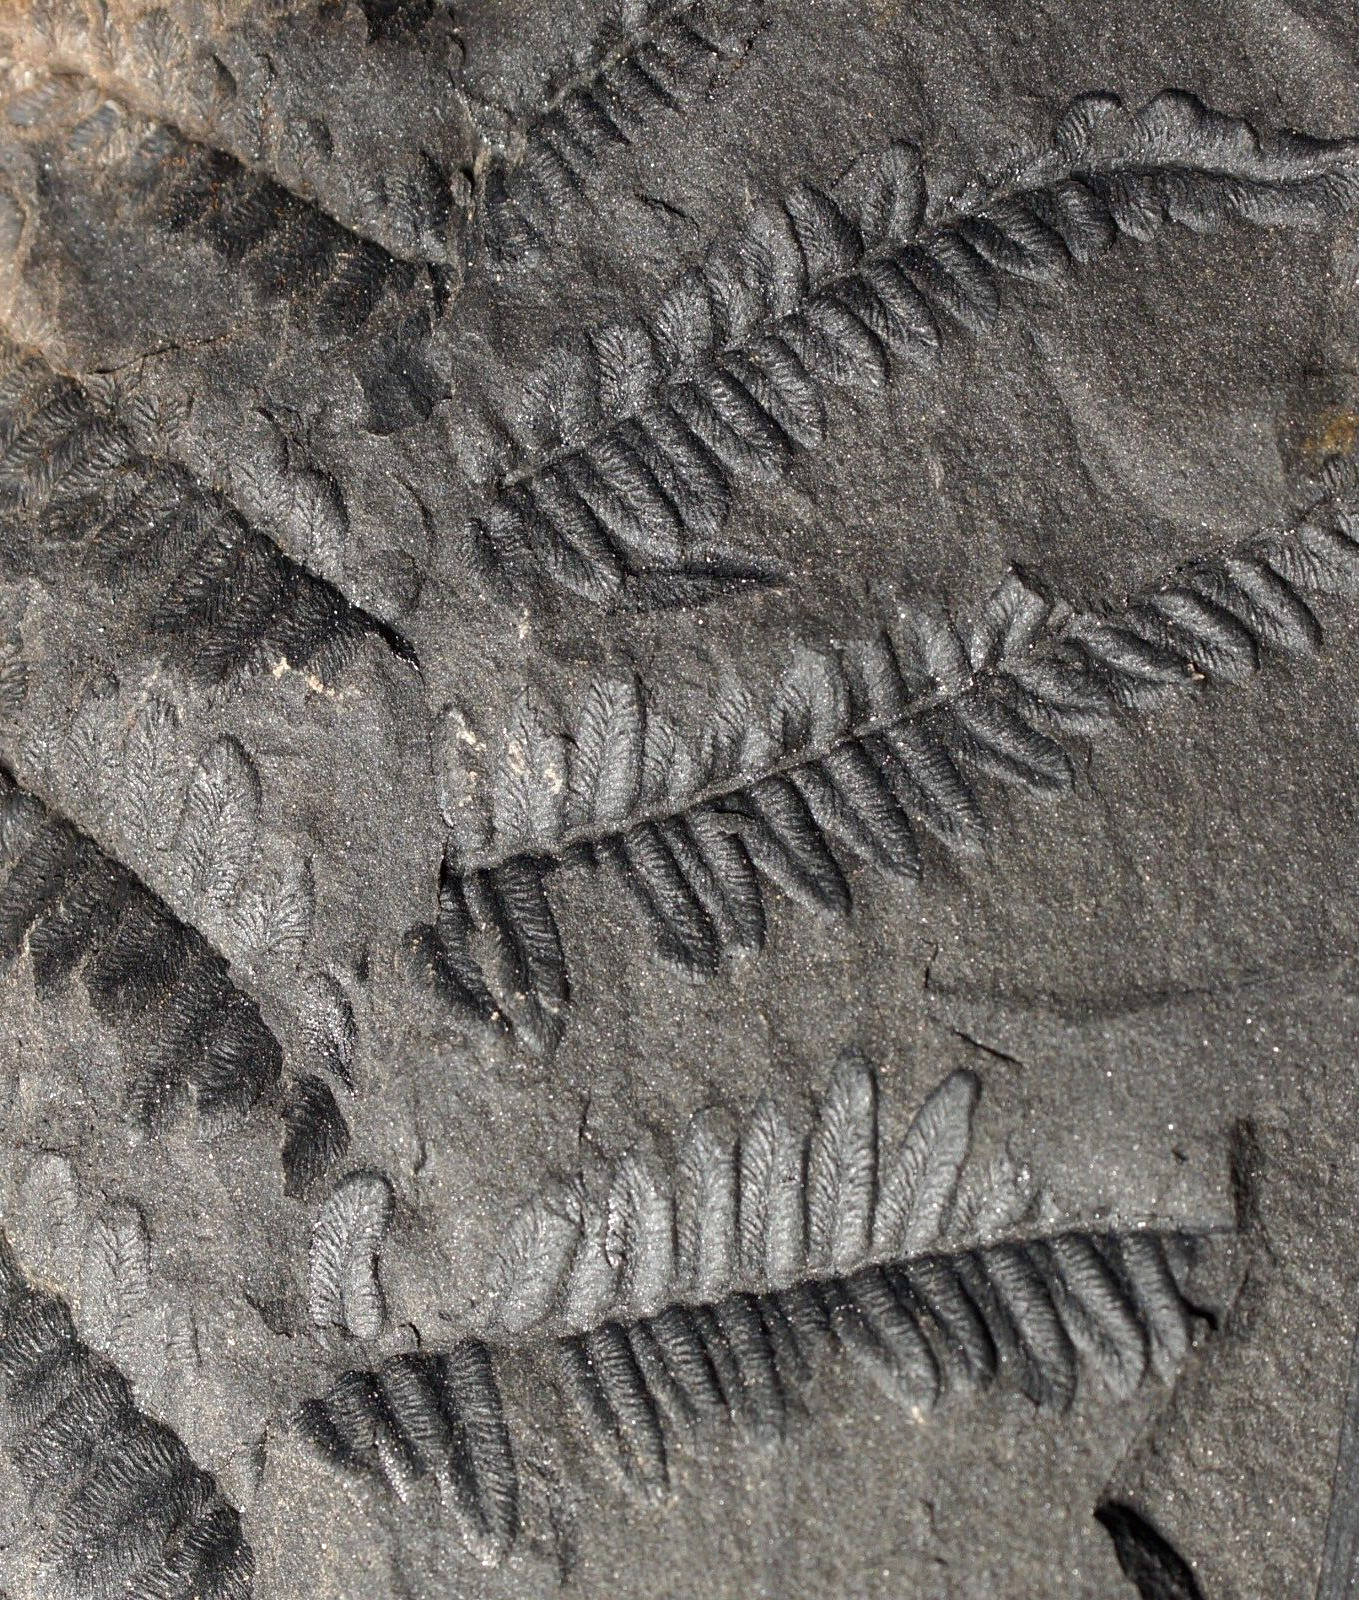 Fossil plant Carboniferous tree seed fern leaf Neuralethopteris leaf